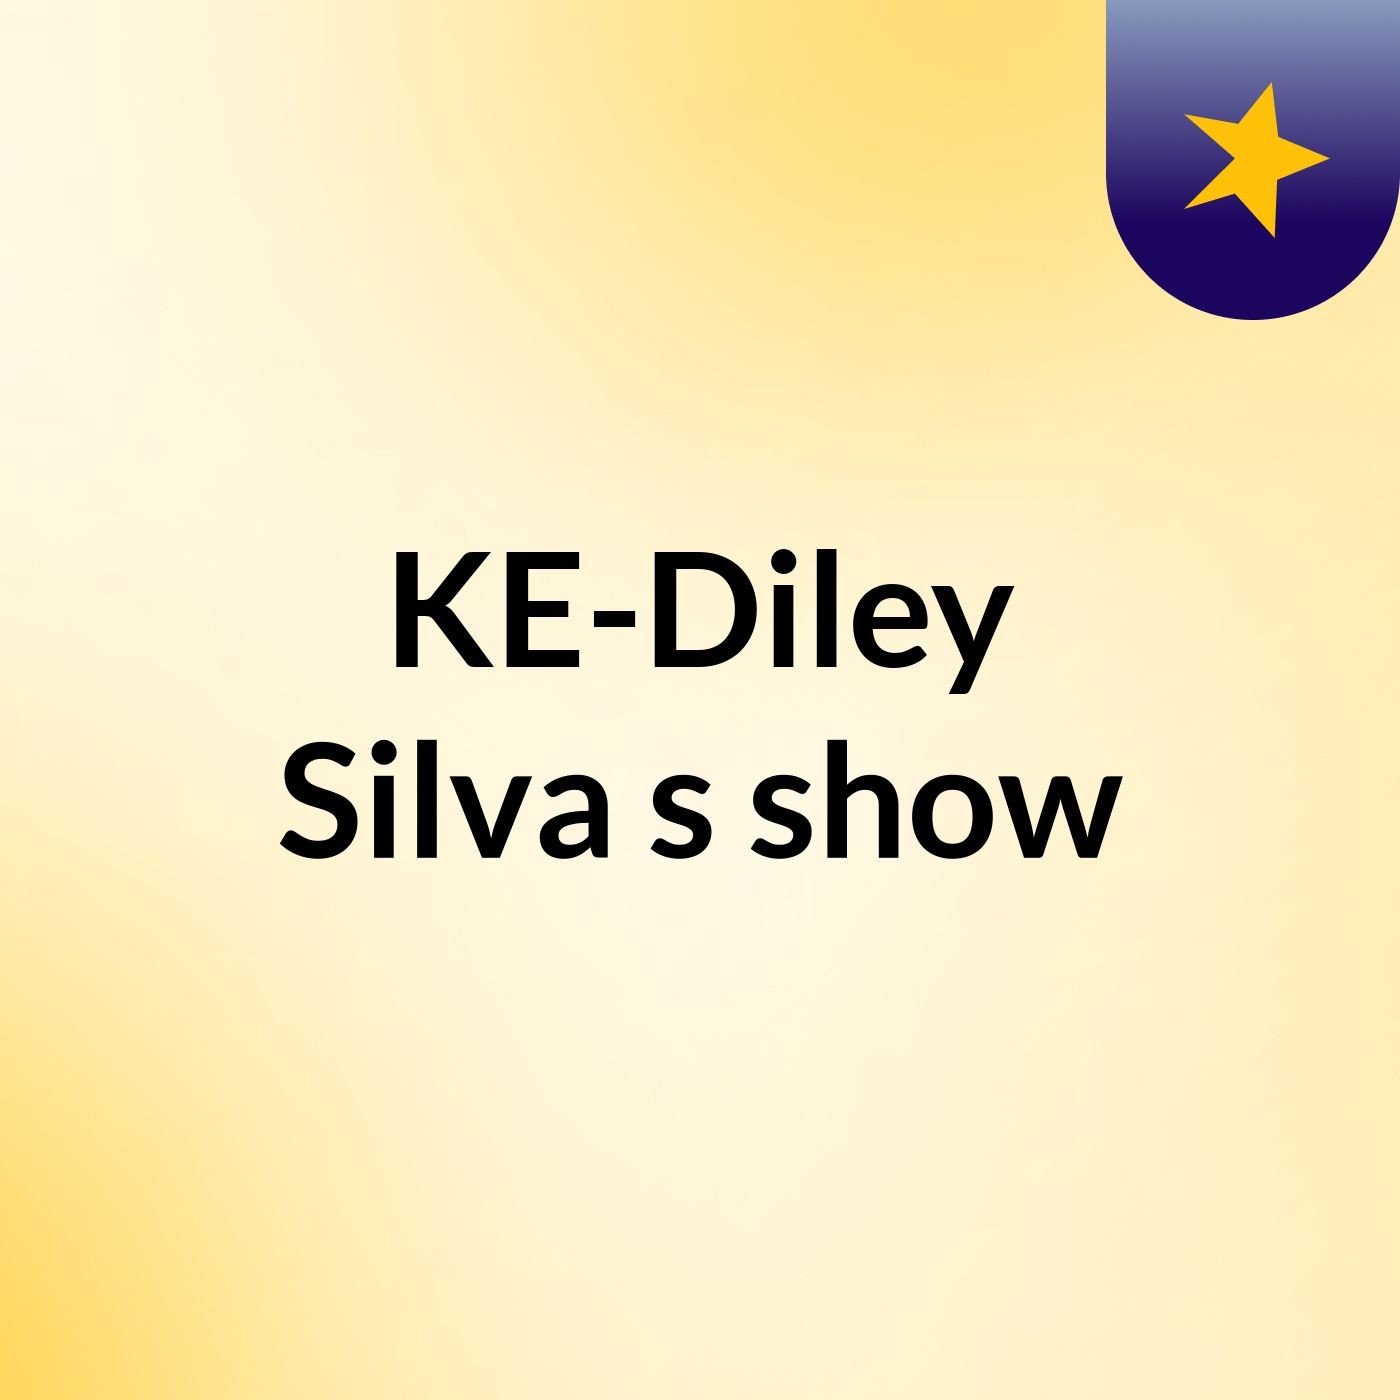 KE-Diley Silva's show